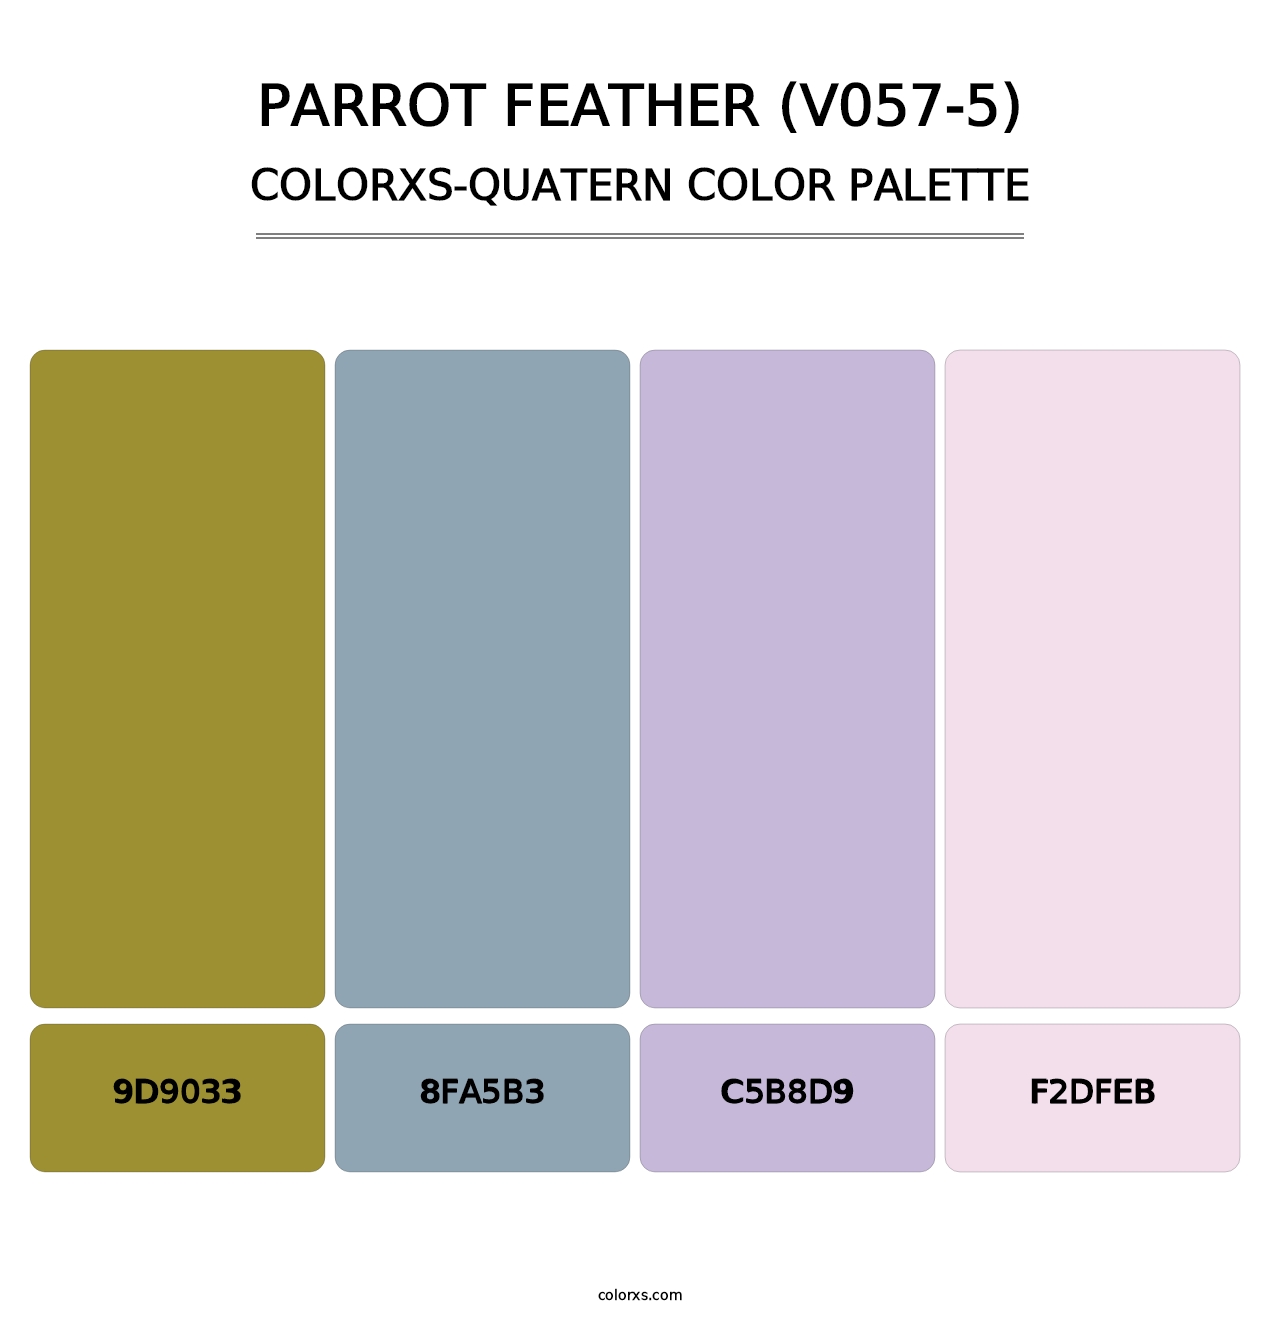 Parrot Feather (V057-5) - Colorxs Quatern Palette